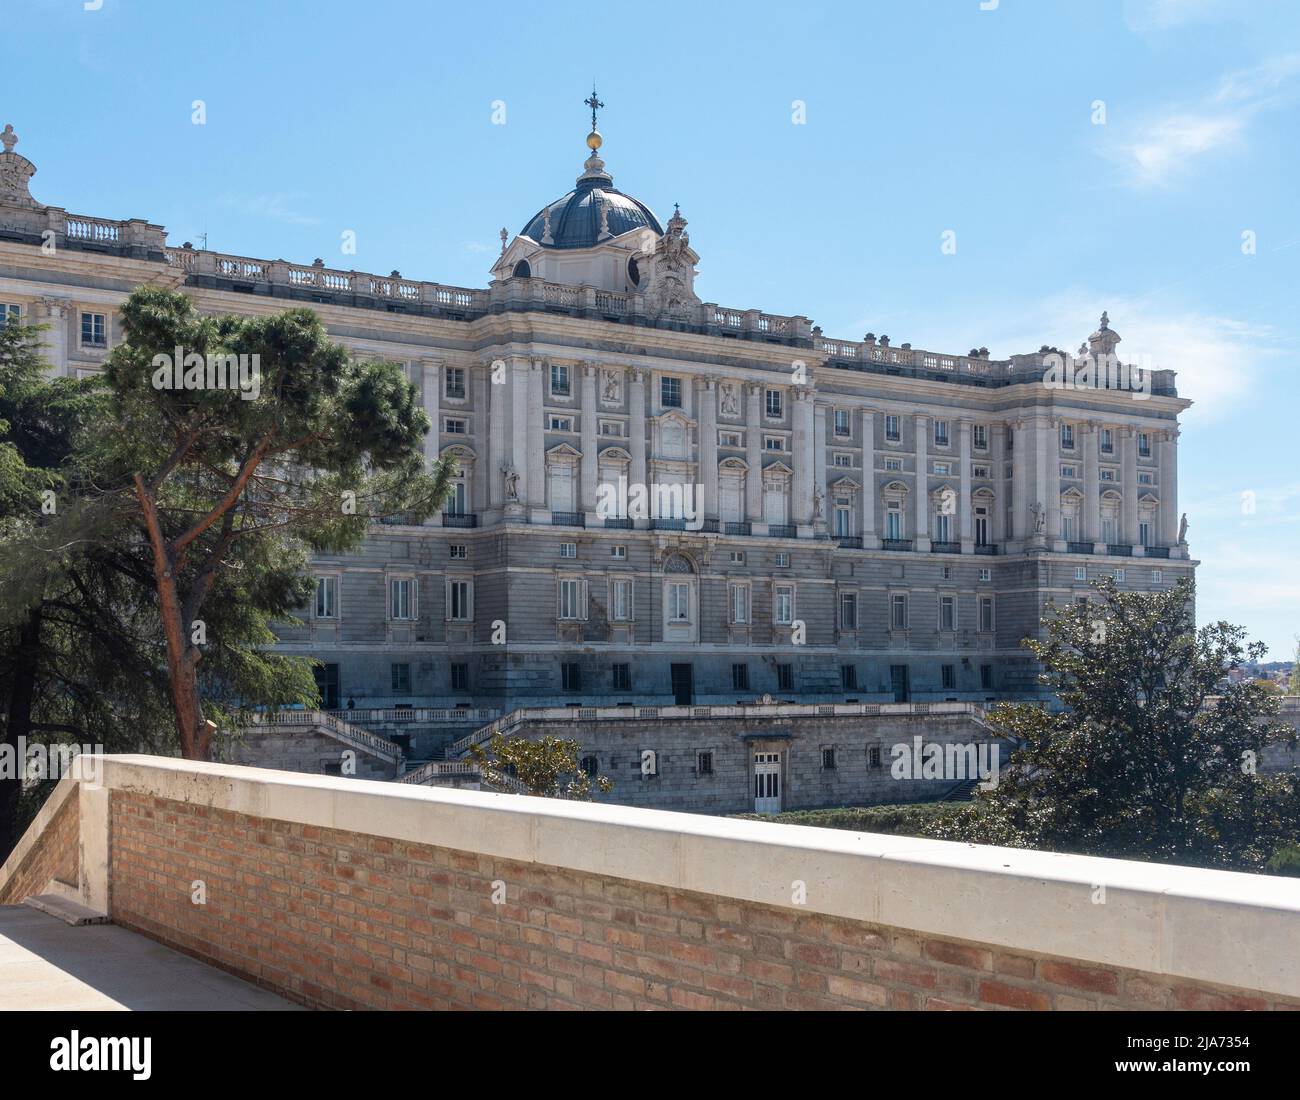 Fachada exterior trasera/norte del Palacio Real de Madrid / Palacio Real de Madrid, actualmente sólo se utiliza para ocasiones de Estado. Foto de stock